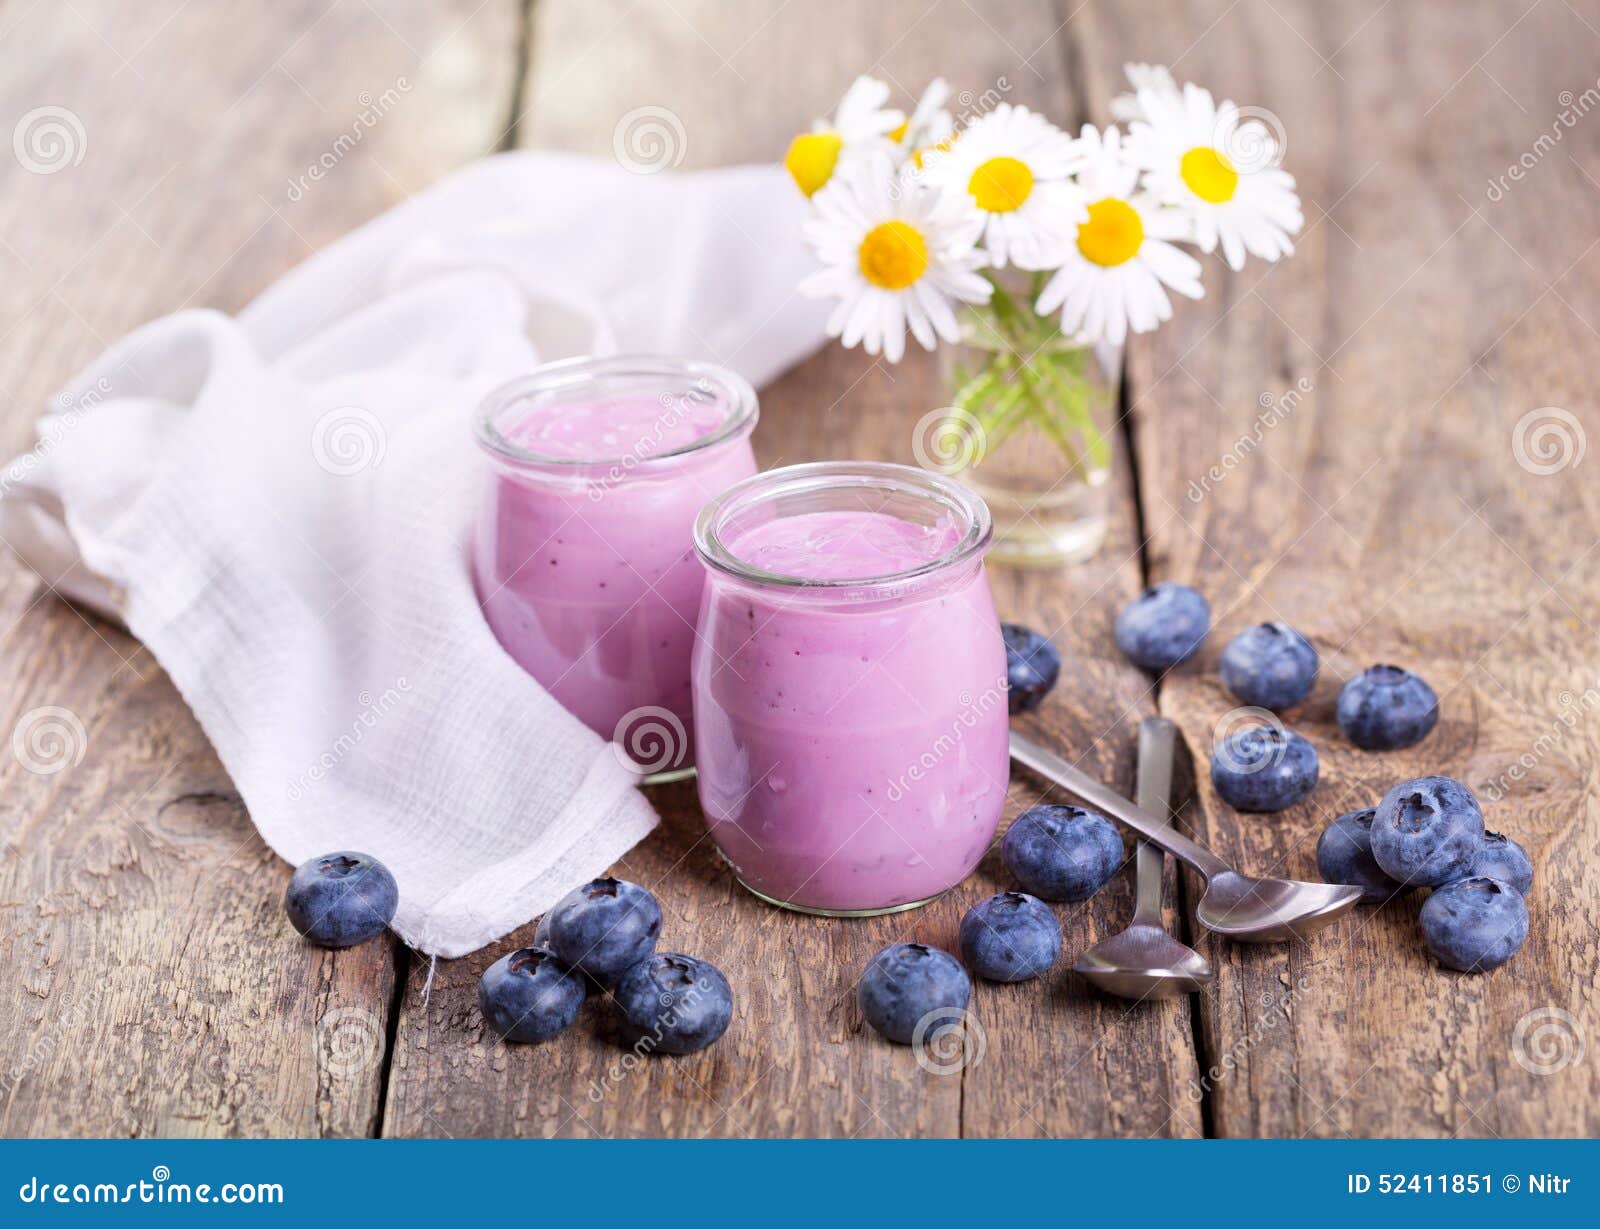 蓝莓酸奶 库存图片. 图片 包括有 夏天, 酸奶, 可口, 牛奶店, 水果, 奶油甜点, 快餐, 自创, 营养 - 19977781